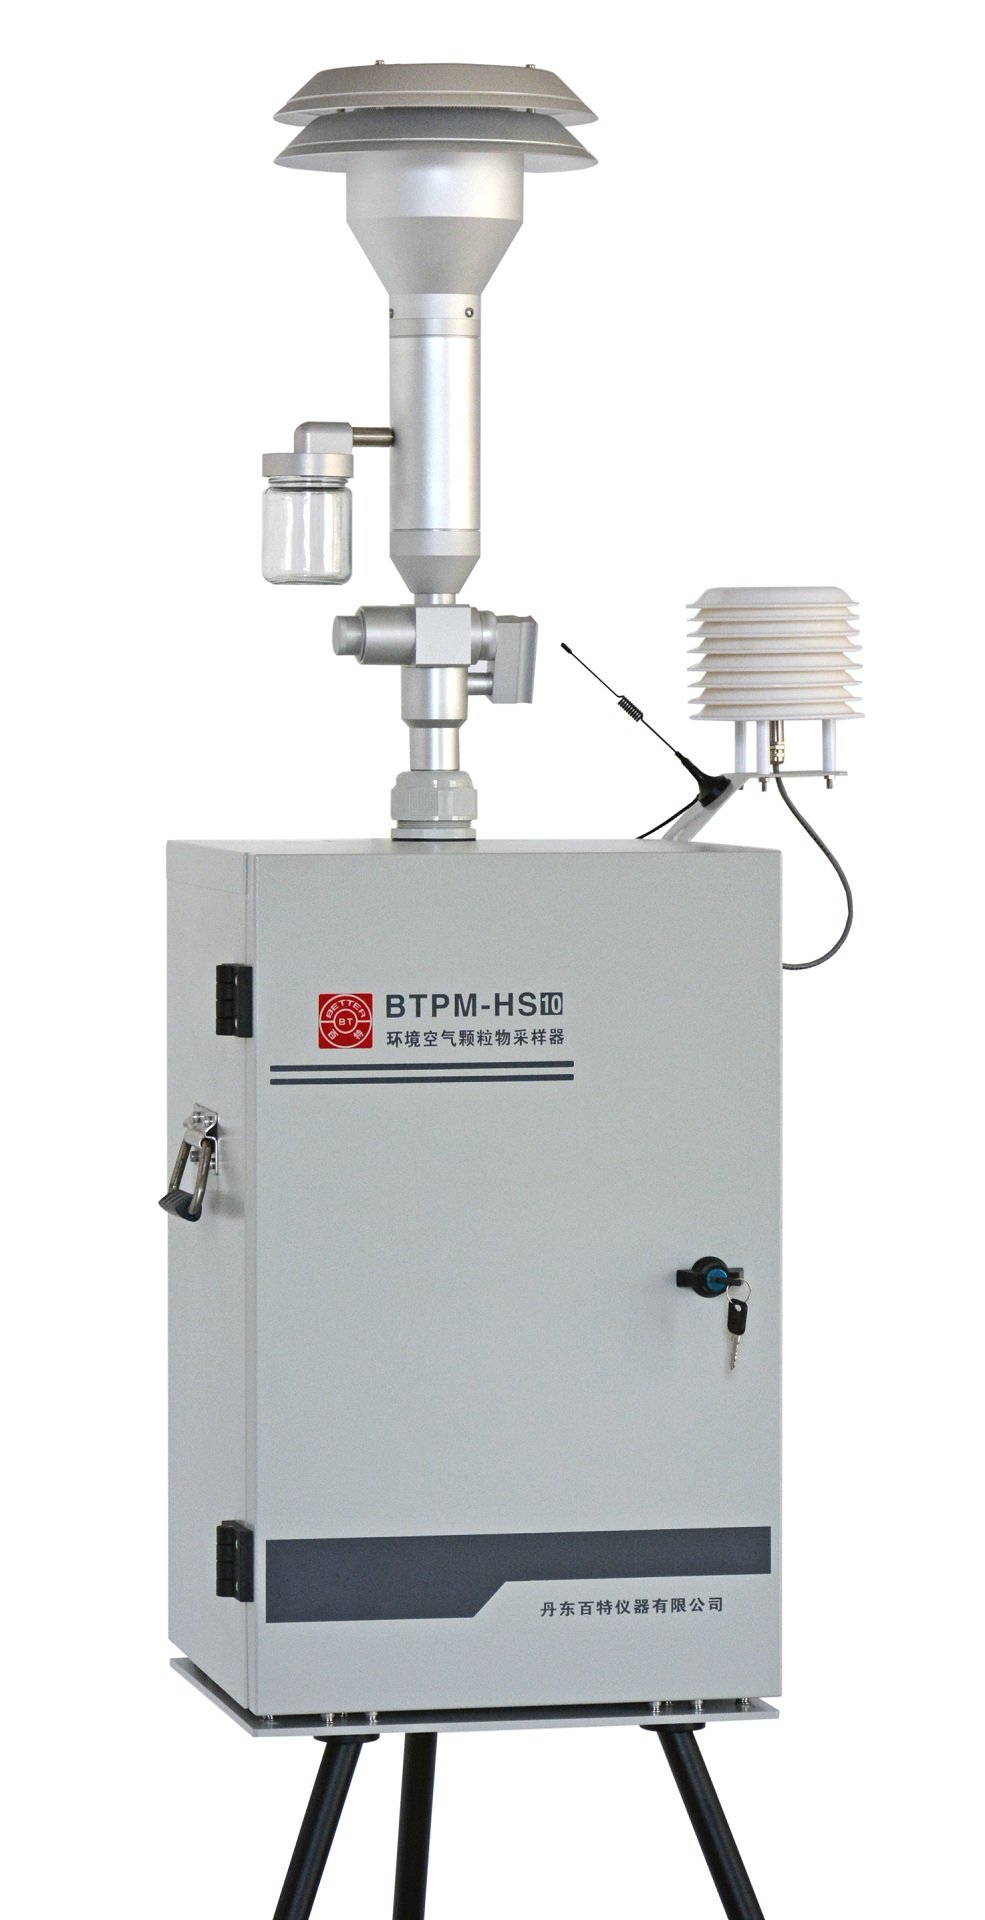 BTPM-HS10環境空氣顆粒物采樣器的圖片